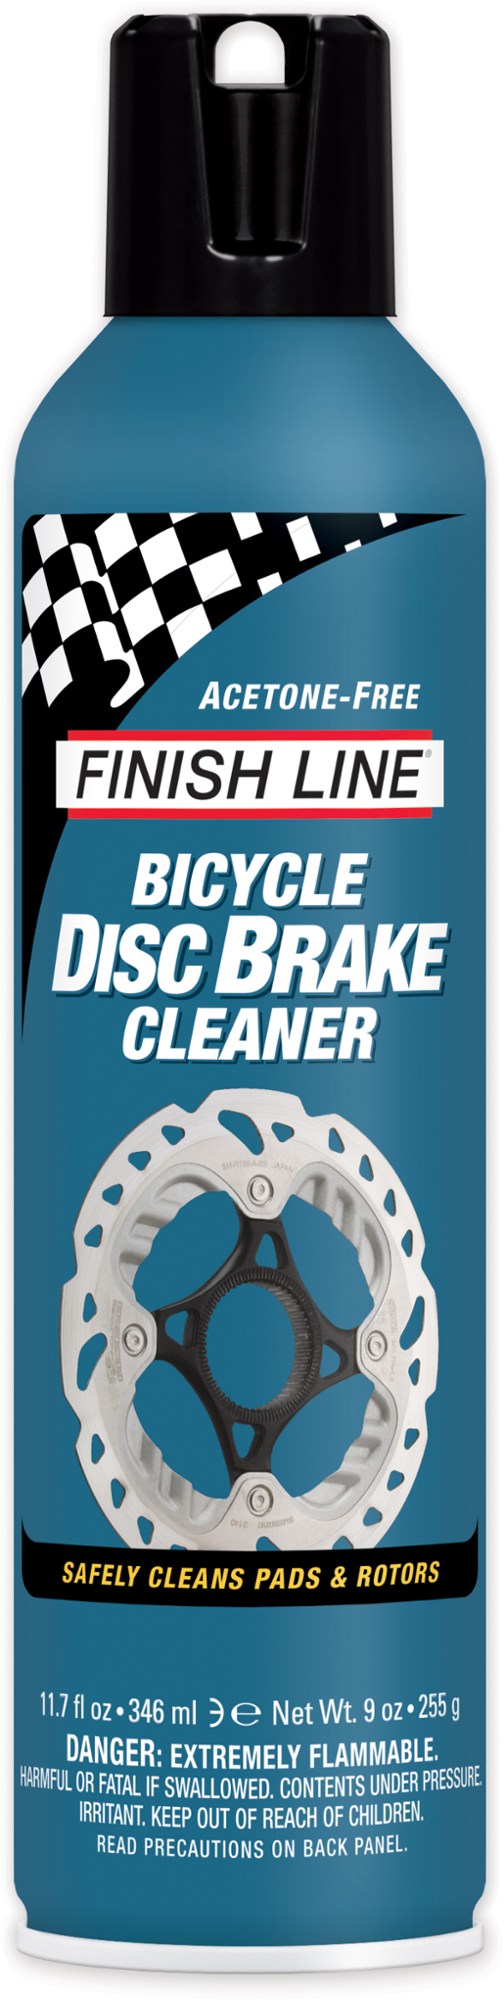 Очиститель дисковых тормозов Finish Line очиститель для цепи и тормозов велосипеда аэрозоль 400 мл trix